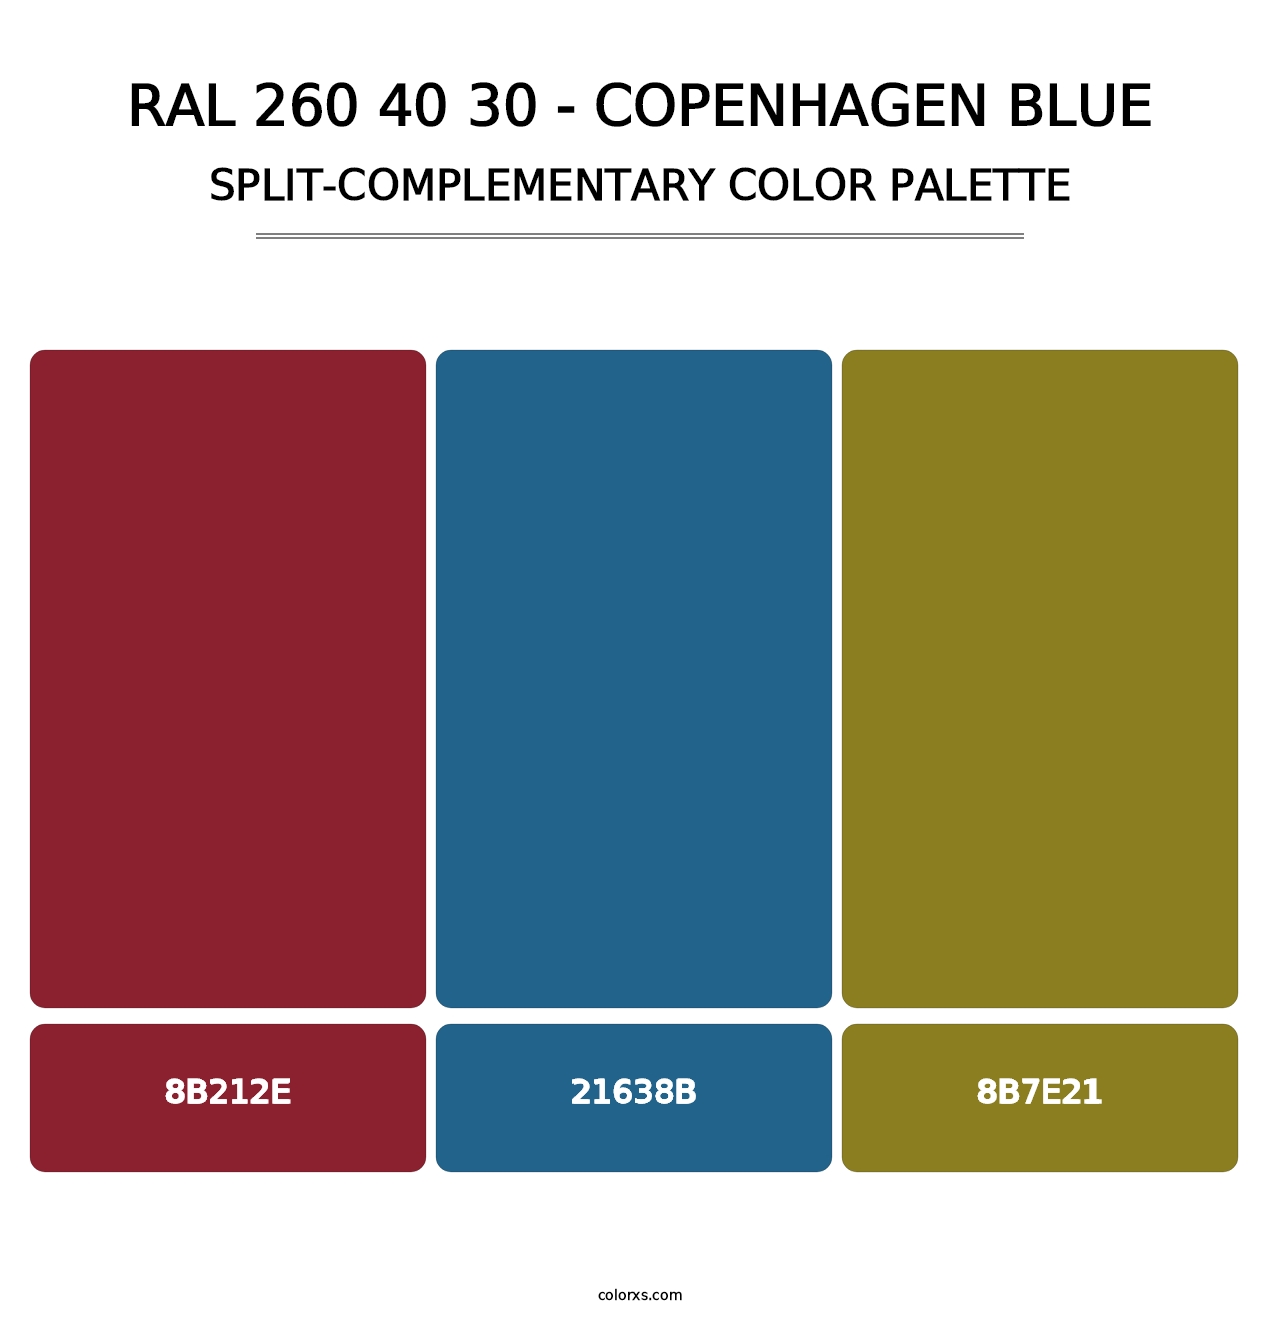 RAL 260 40 30 - Copenhagen Blue - Split-Complementary Color Palette